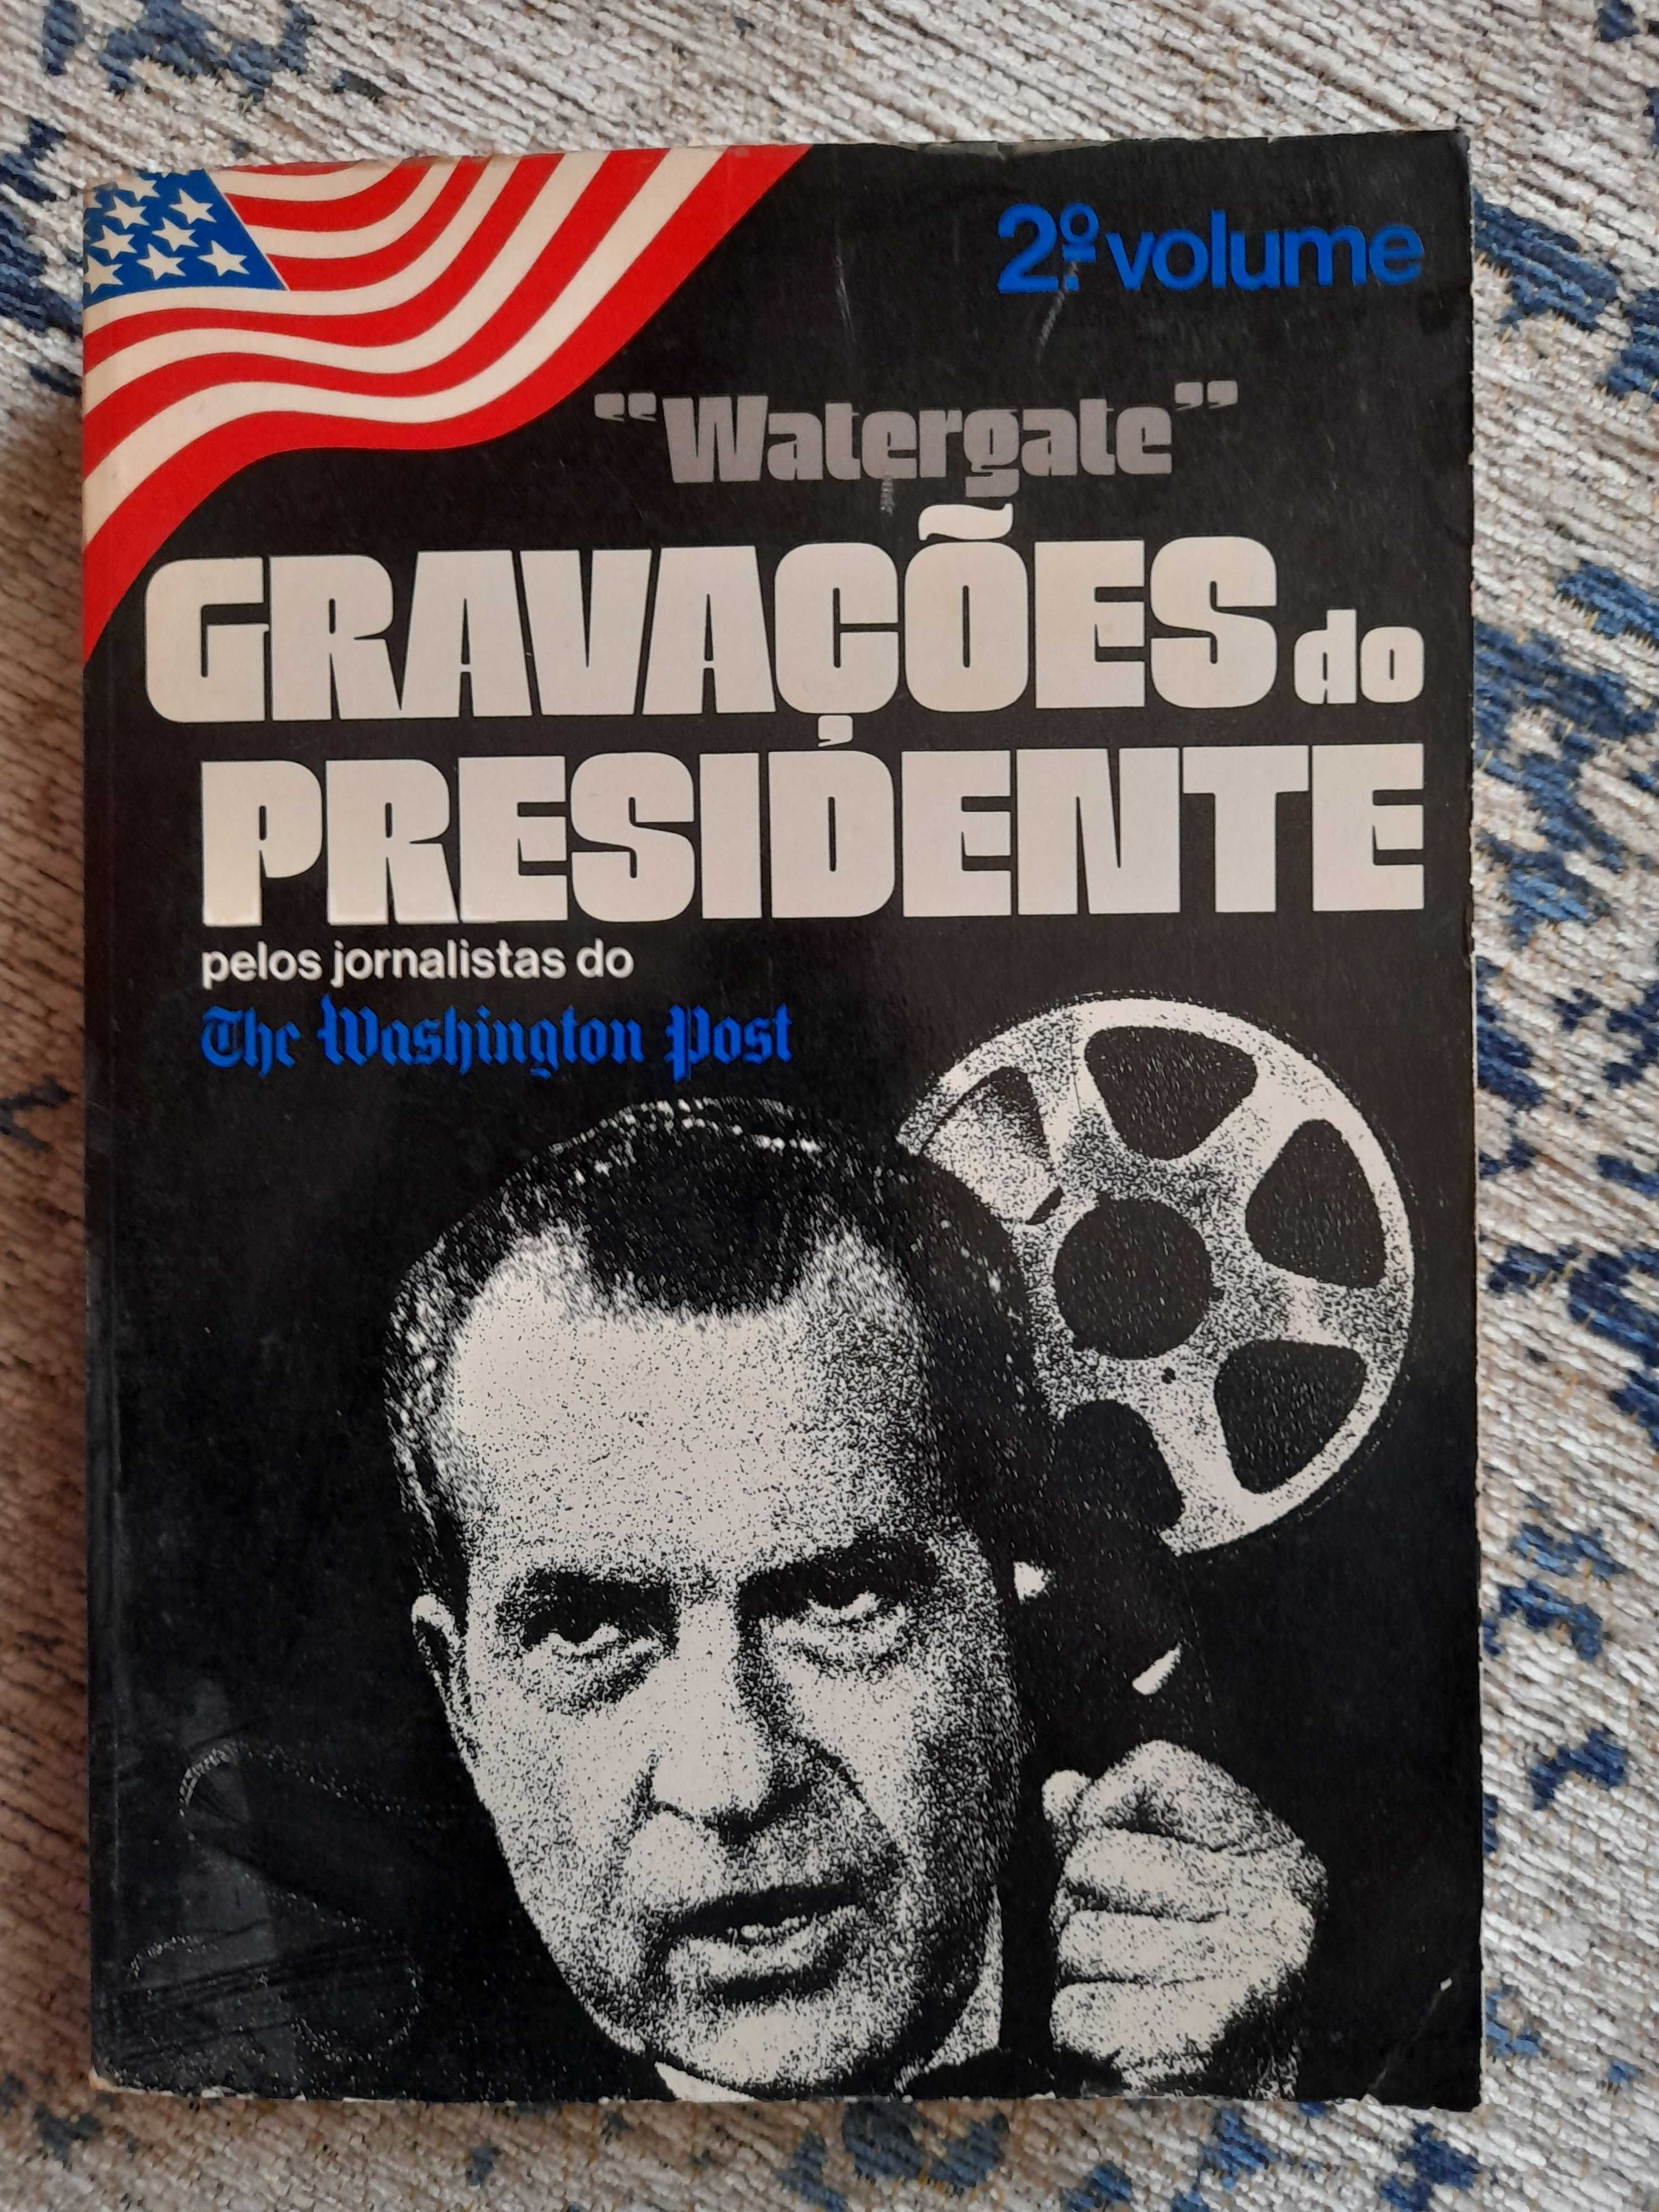 Watergate Gravações do Presidente (2.° vol.)